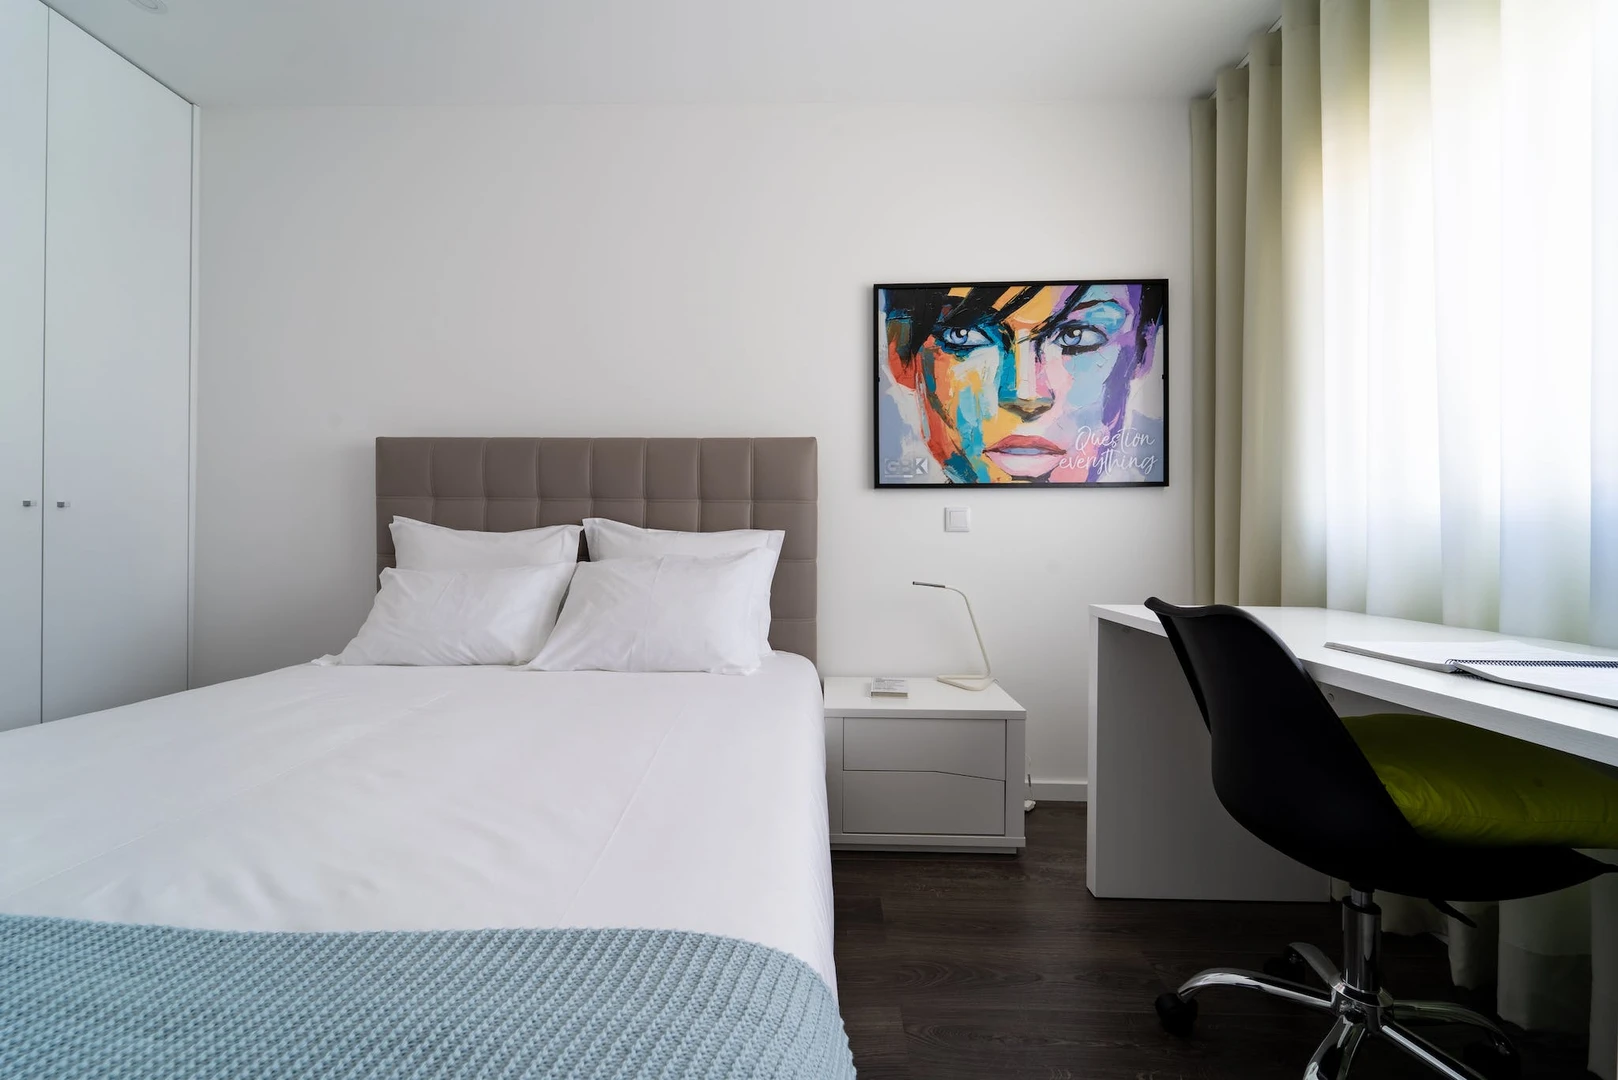 Cheap private room in Braga